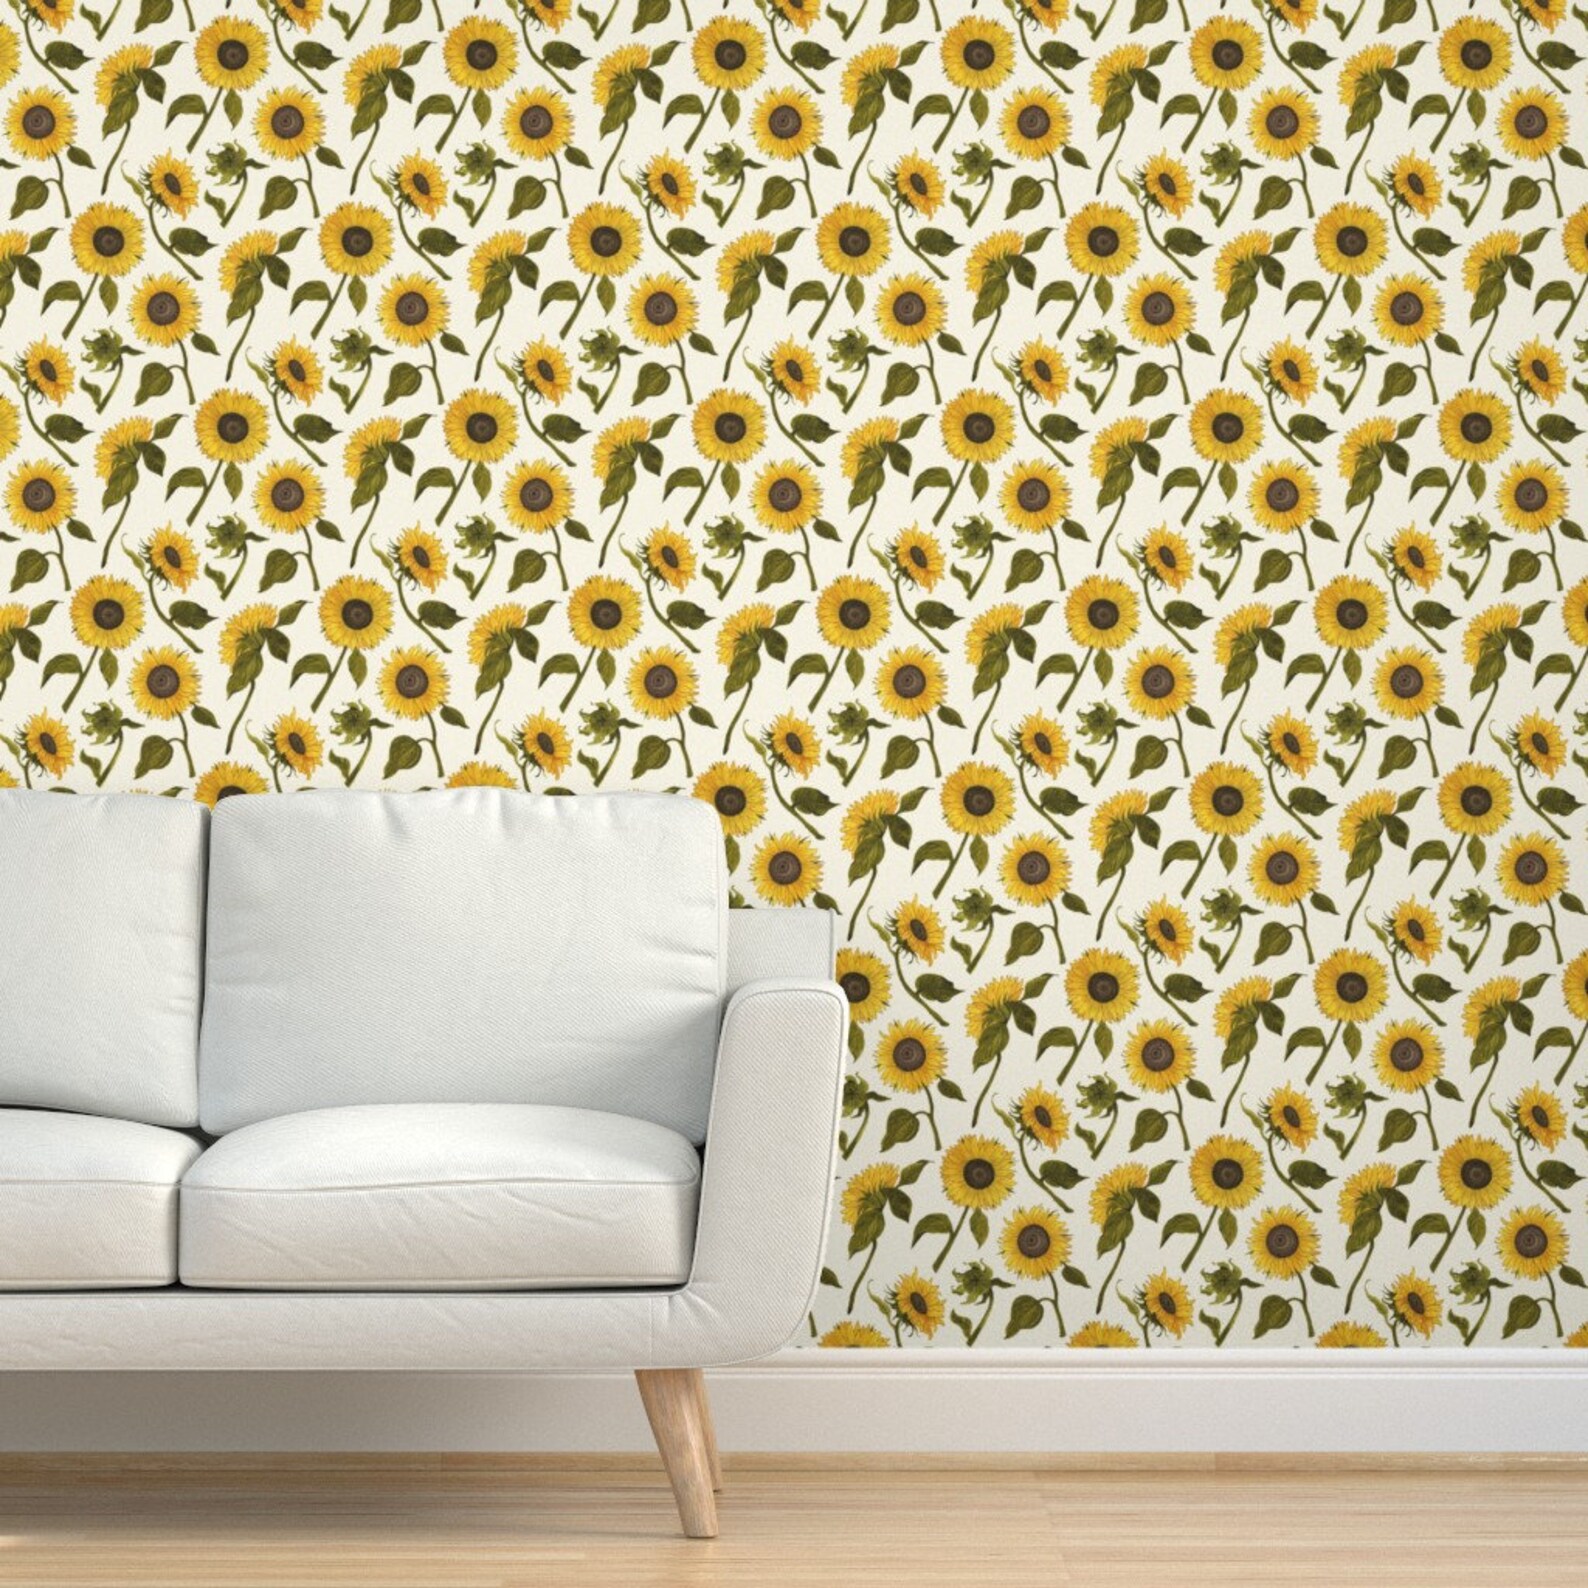 Sunflowers Wallpaper Sunflower Large by Angelastevens - Etsy